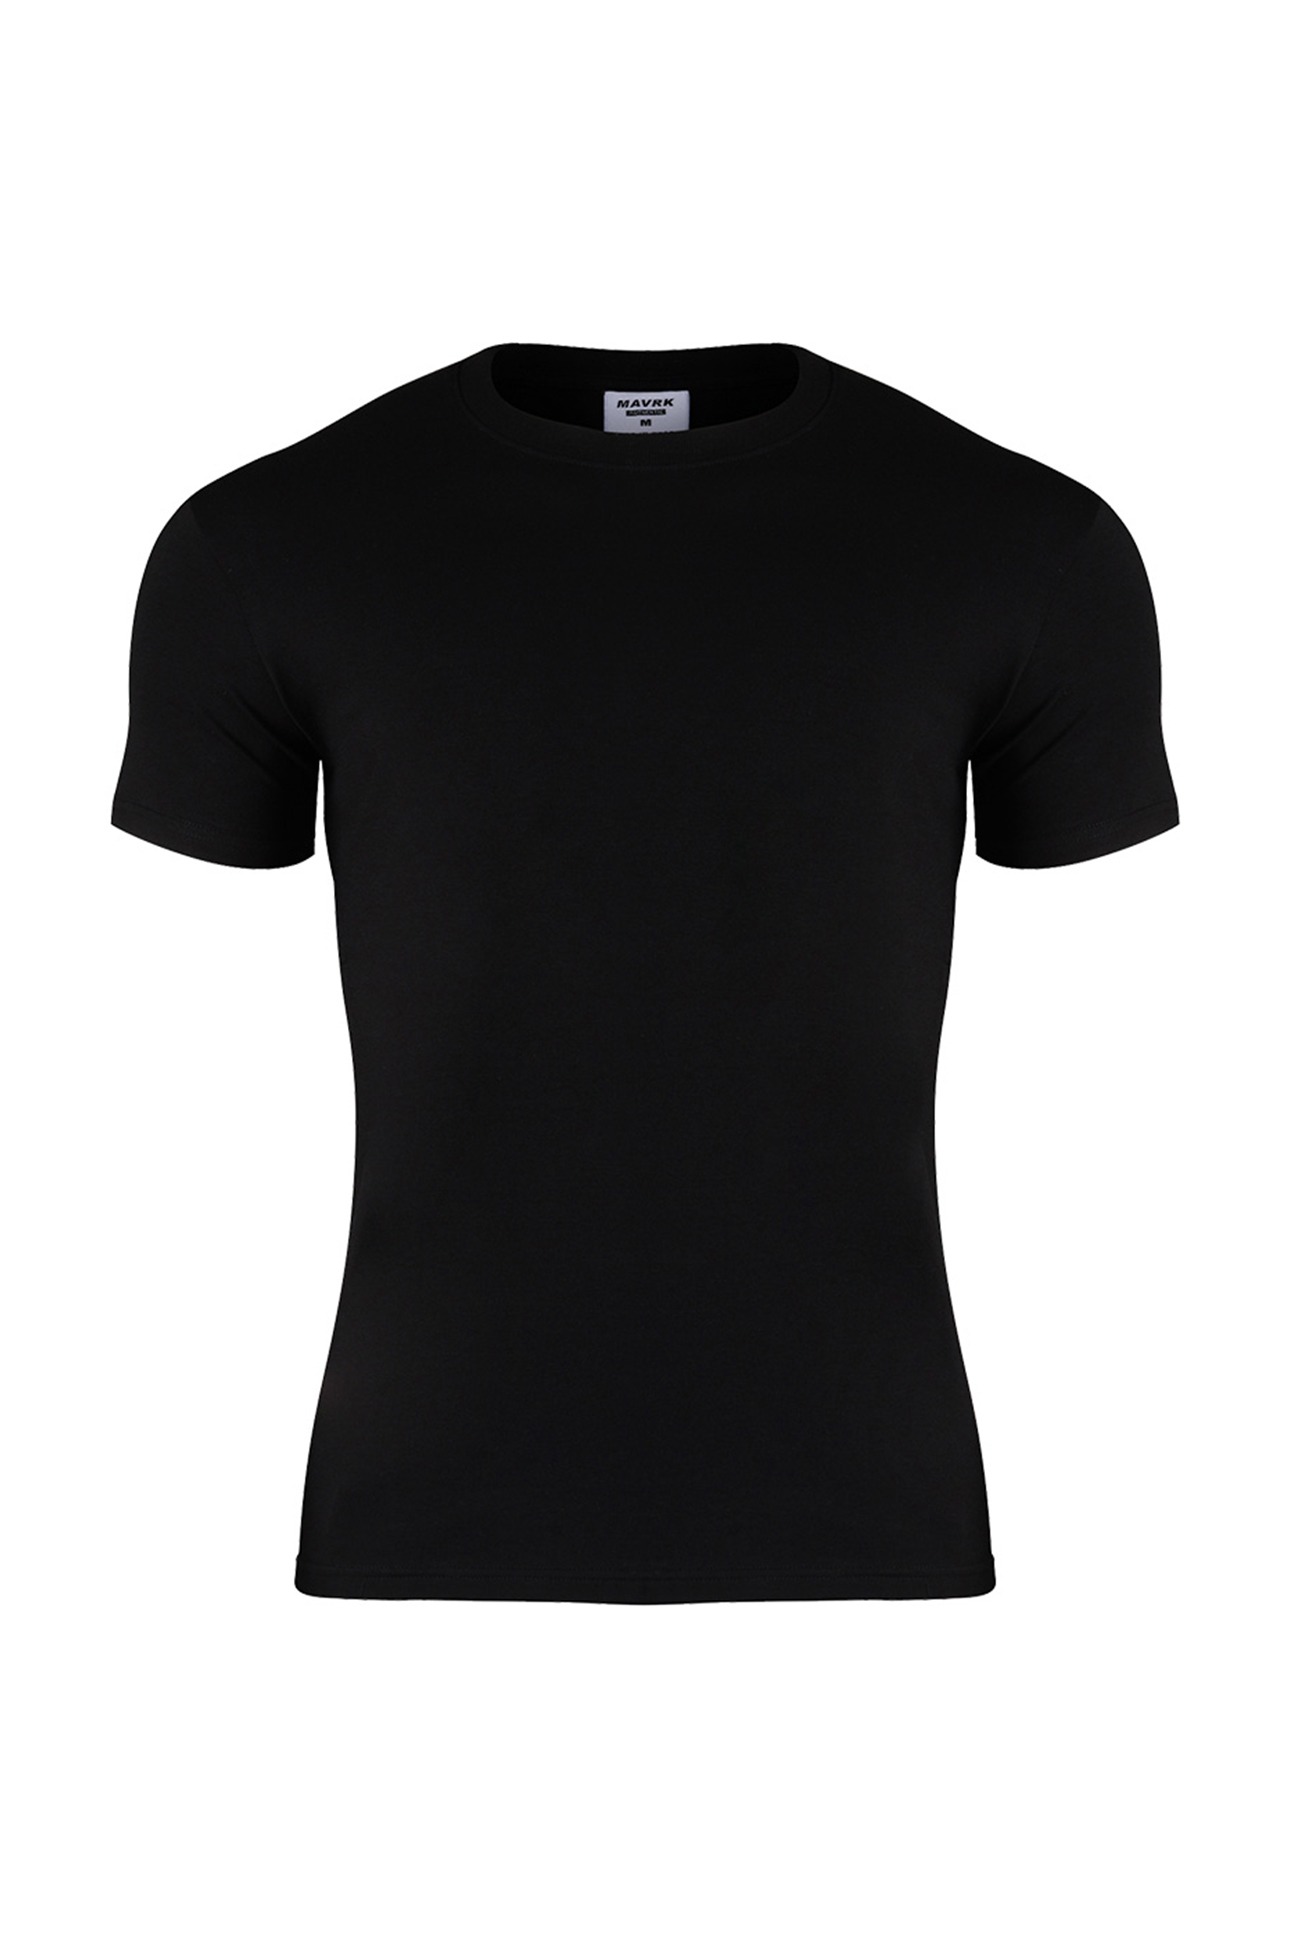 슬림와이드 무지 머슬핏 티셔츠 블랙